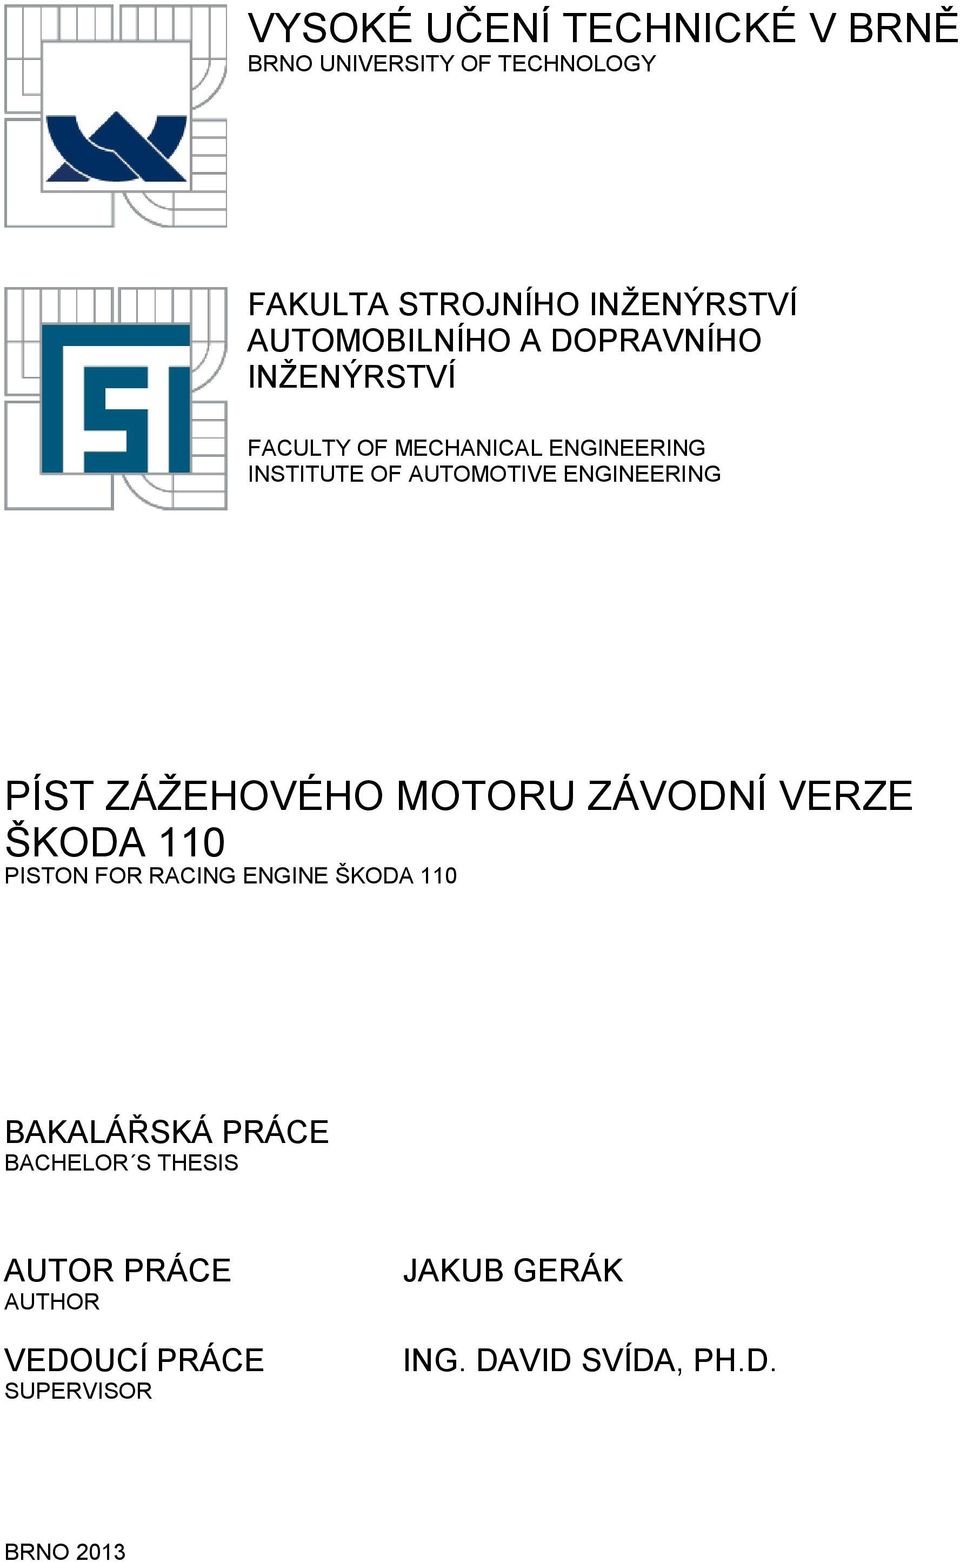 ENGINEERING PÍST ZÁŽEHOVÉHO MOTORU ZÁVODNÍ VERZE ŠKODA 110 PISTON FOR RACING ENGINE ŠKODA 110